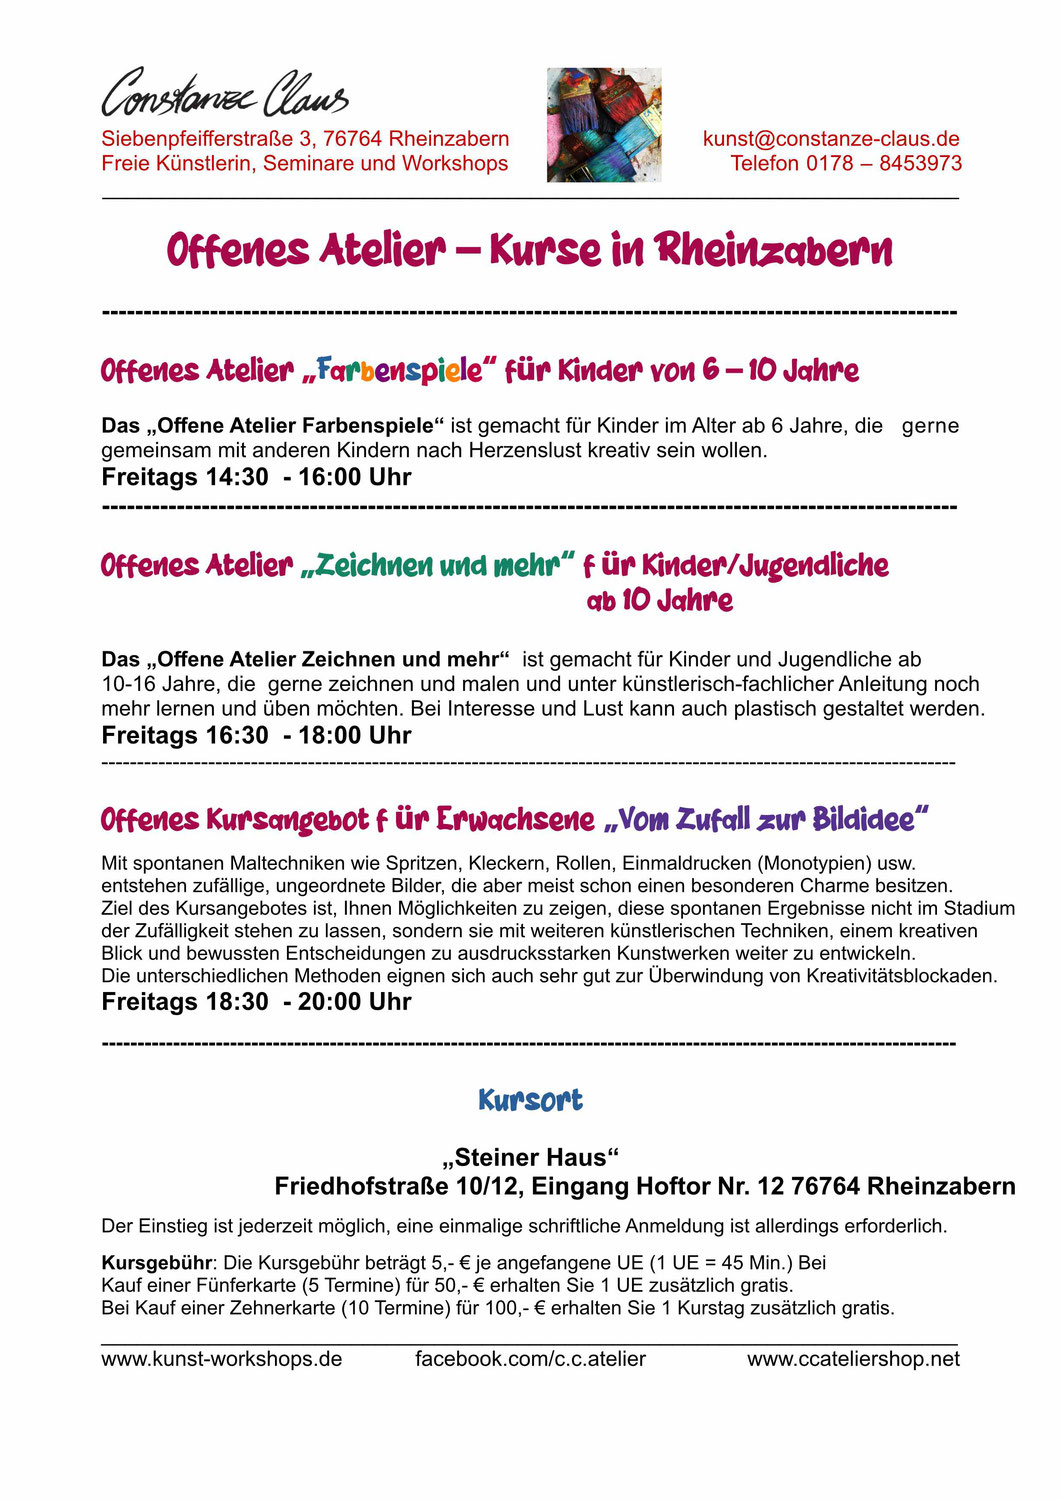 Offenes Atelier - Neue Kurse in Rheinzabern